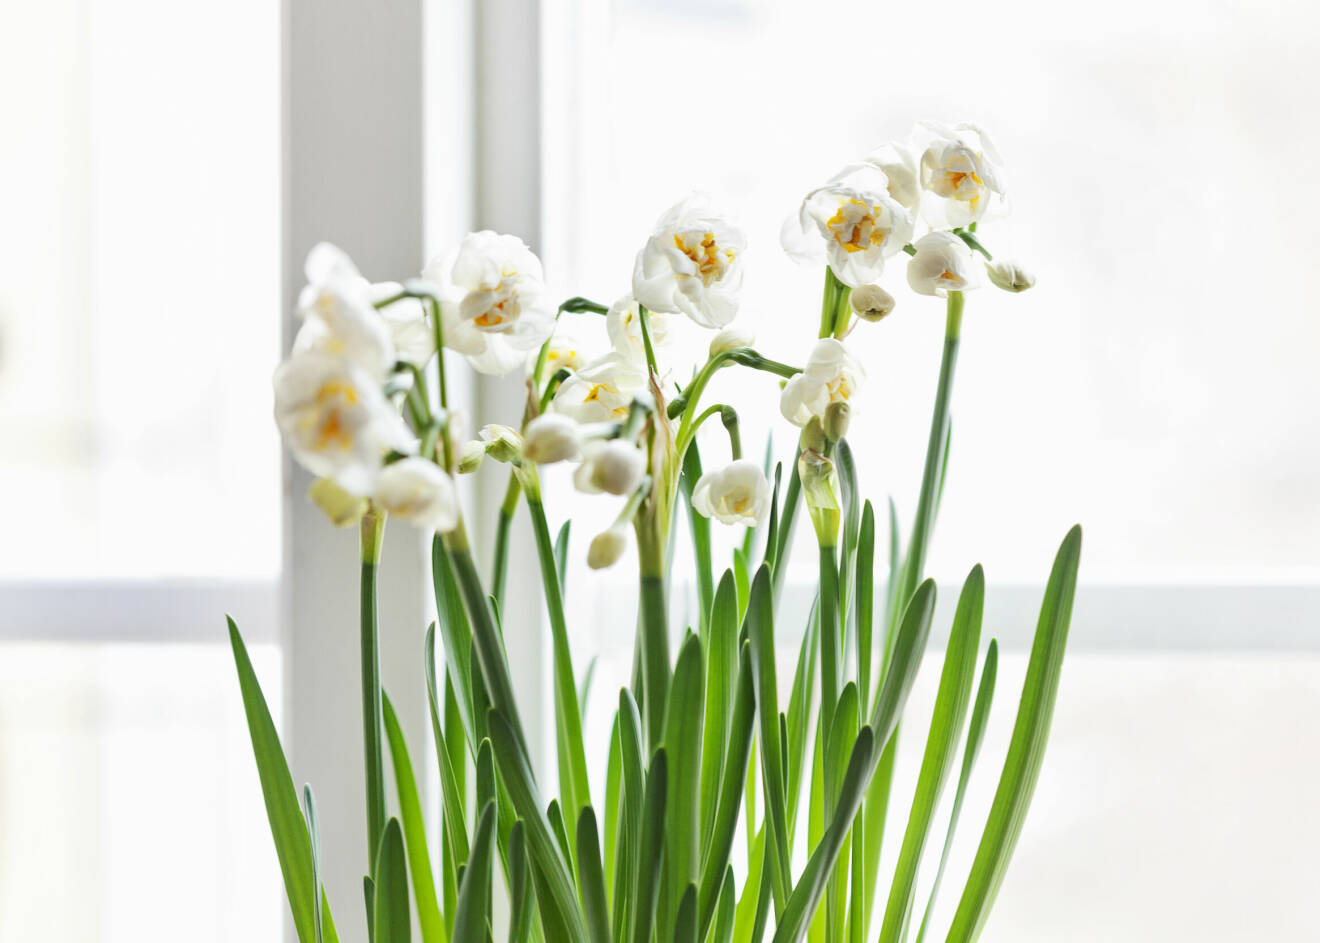 En närbild på tazett med vita blommor och gröna stjälkar, som står i ett fönster.